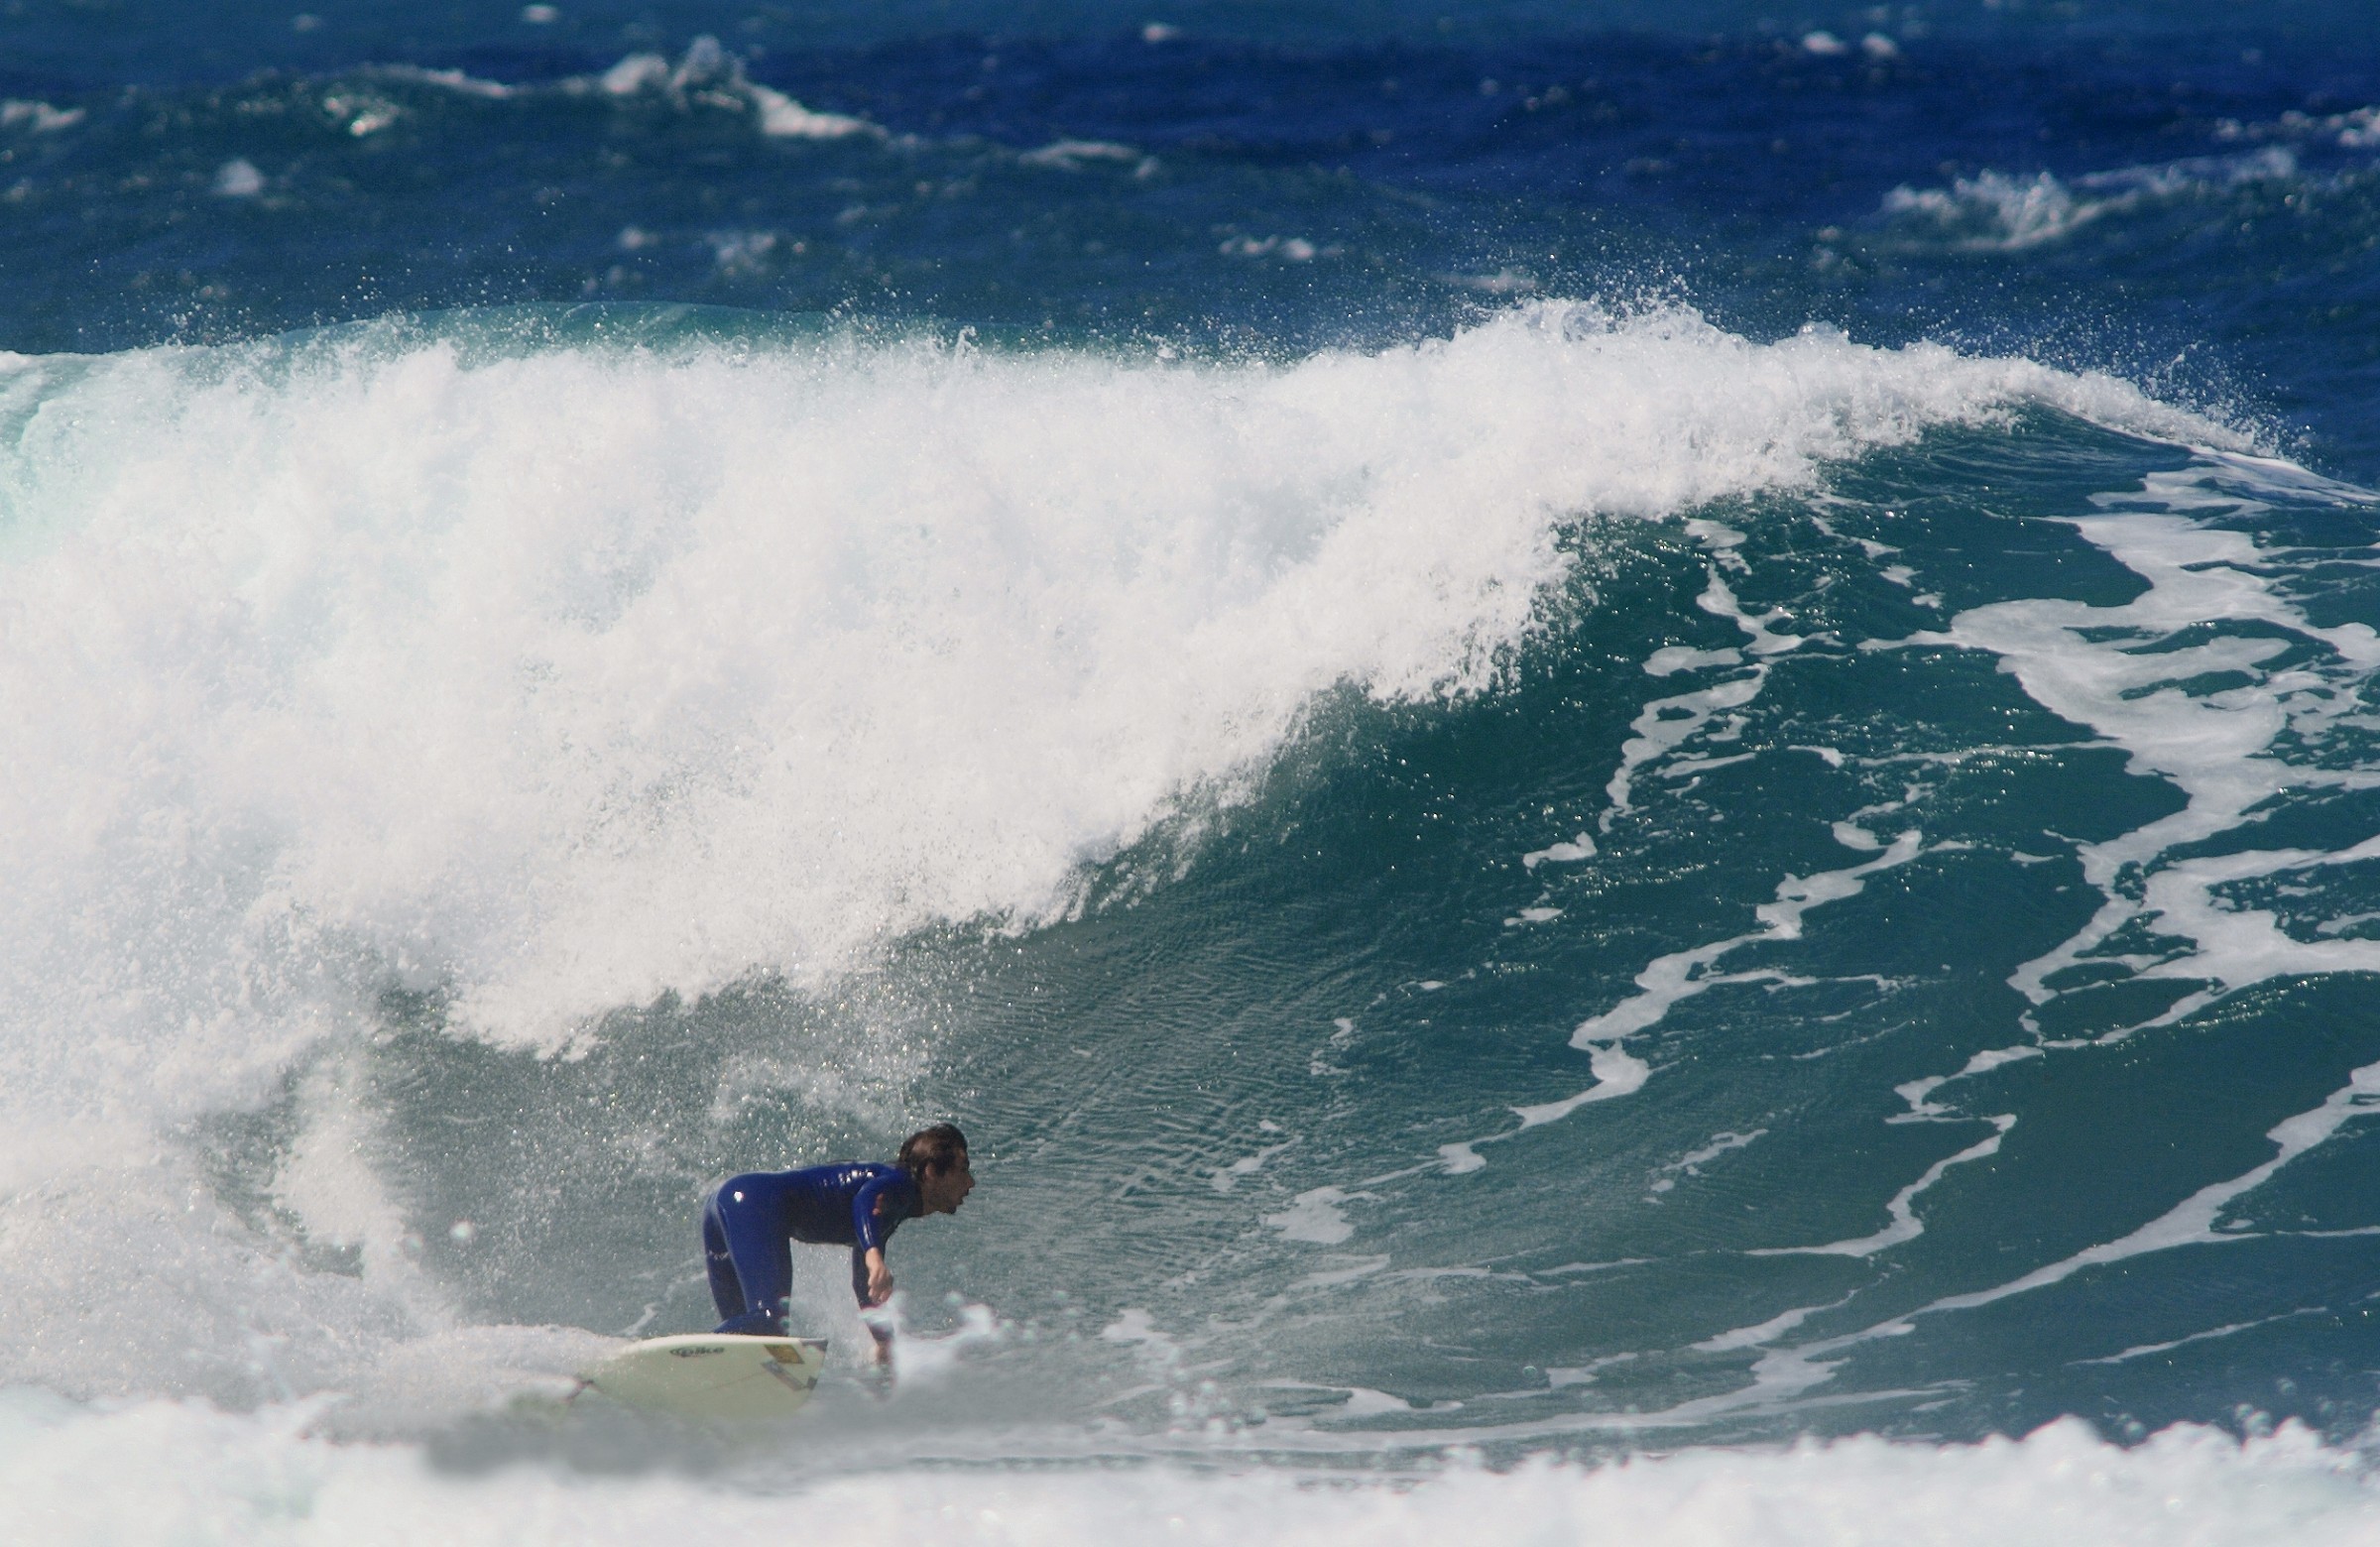 Diego Surf-toed Bottom-turn-West Coast Sardinia...